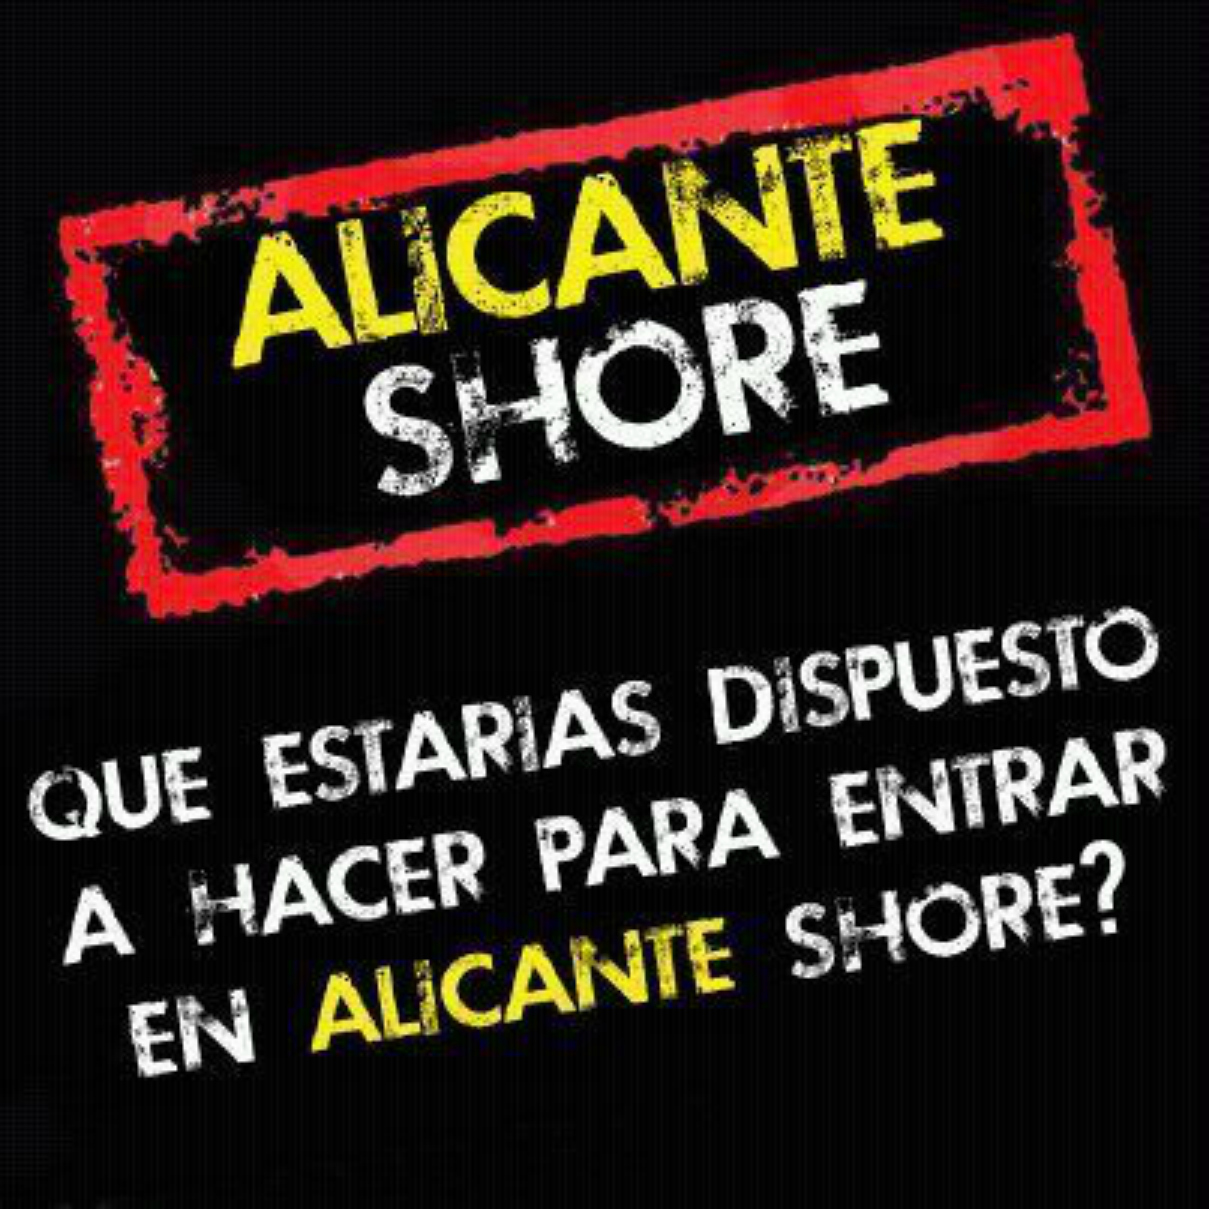 Alicante Shore